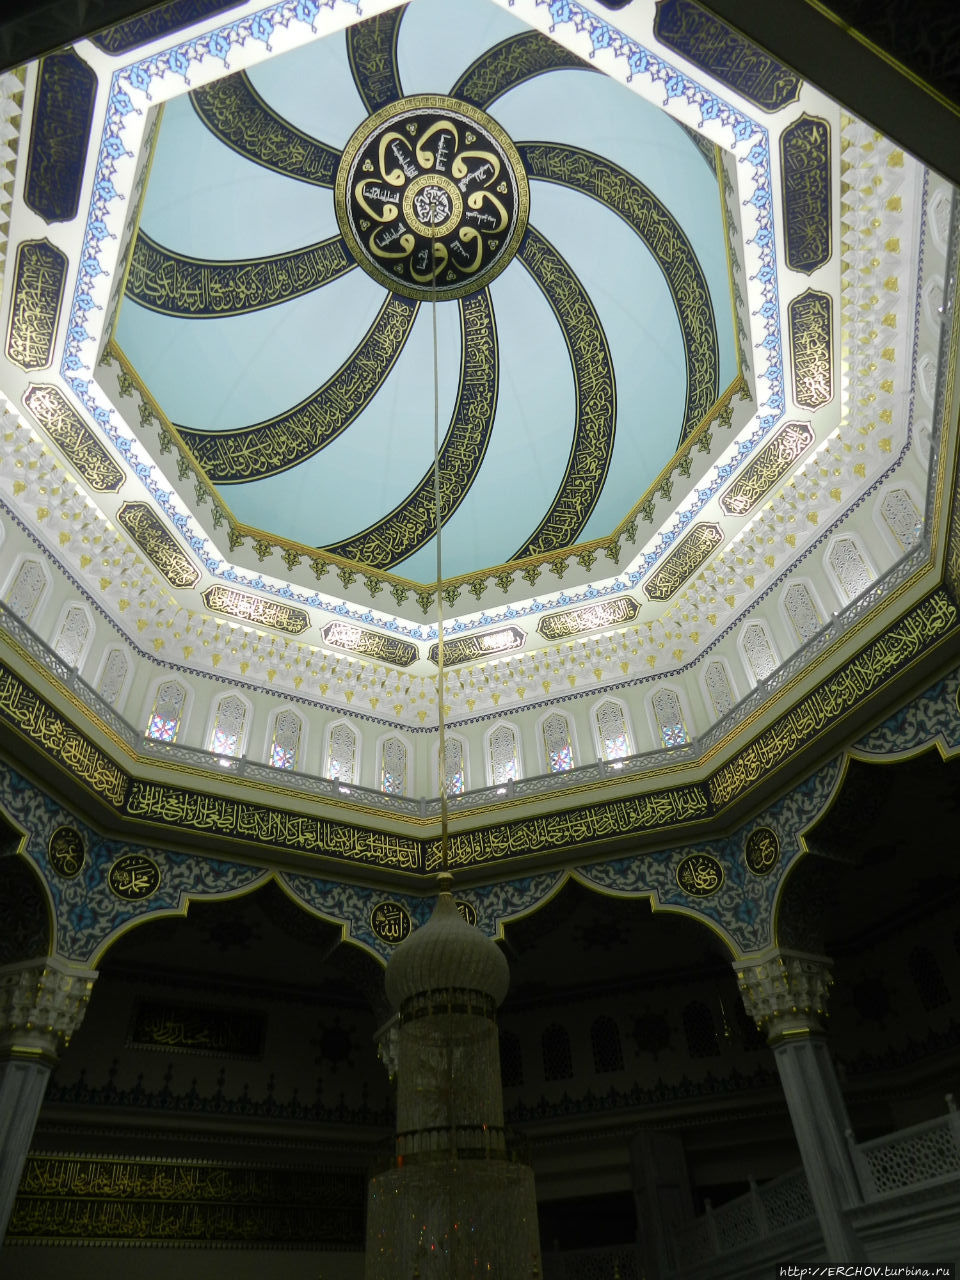 Московская Cоборная мечеть Москва, Россия